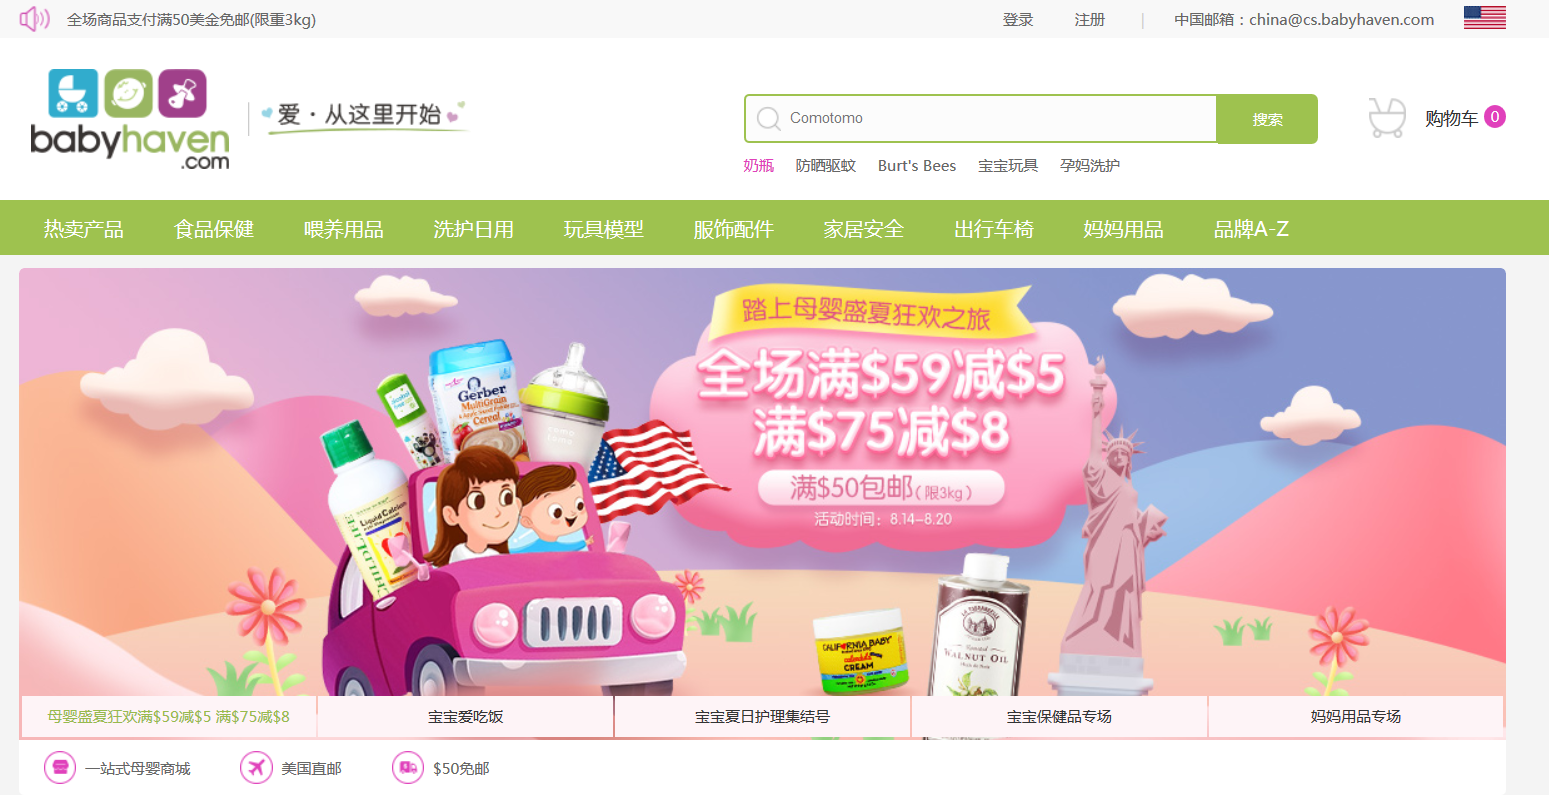 美国婴儿产品零售商Babyhaven今年推出了中国电子商务的网站在中国达到千禧年的妈妈。